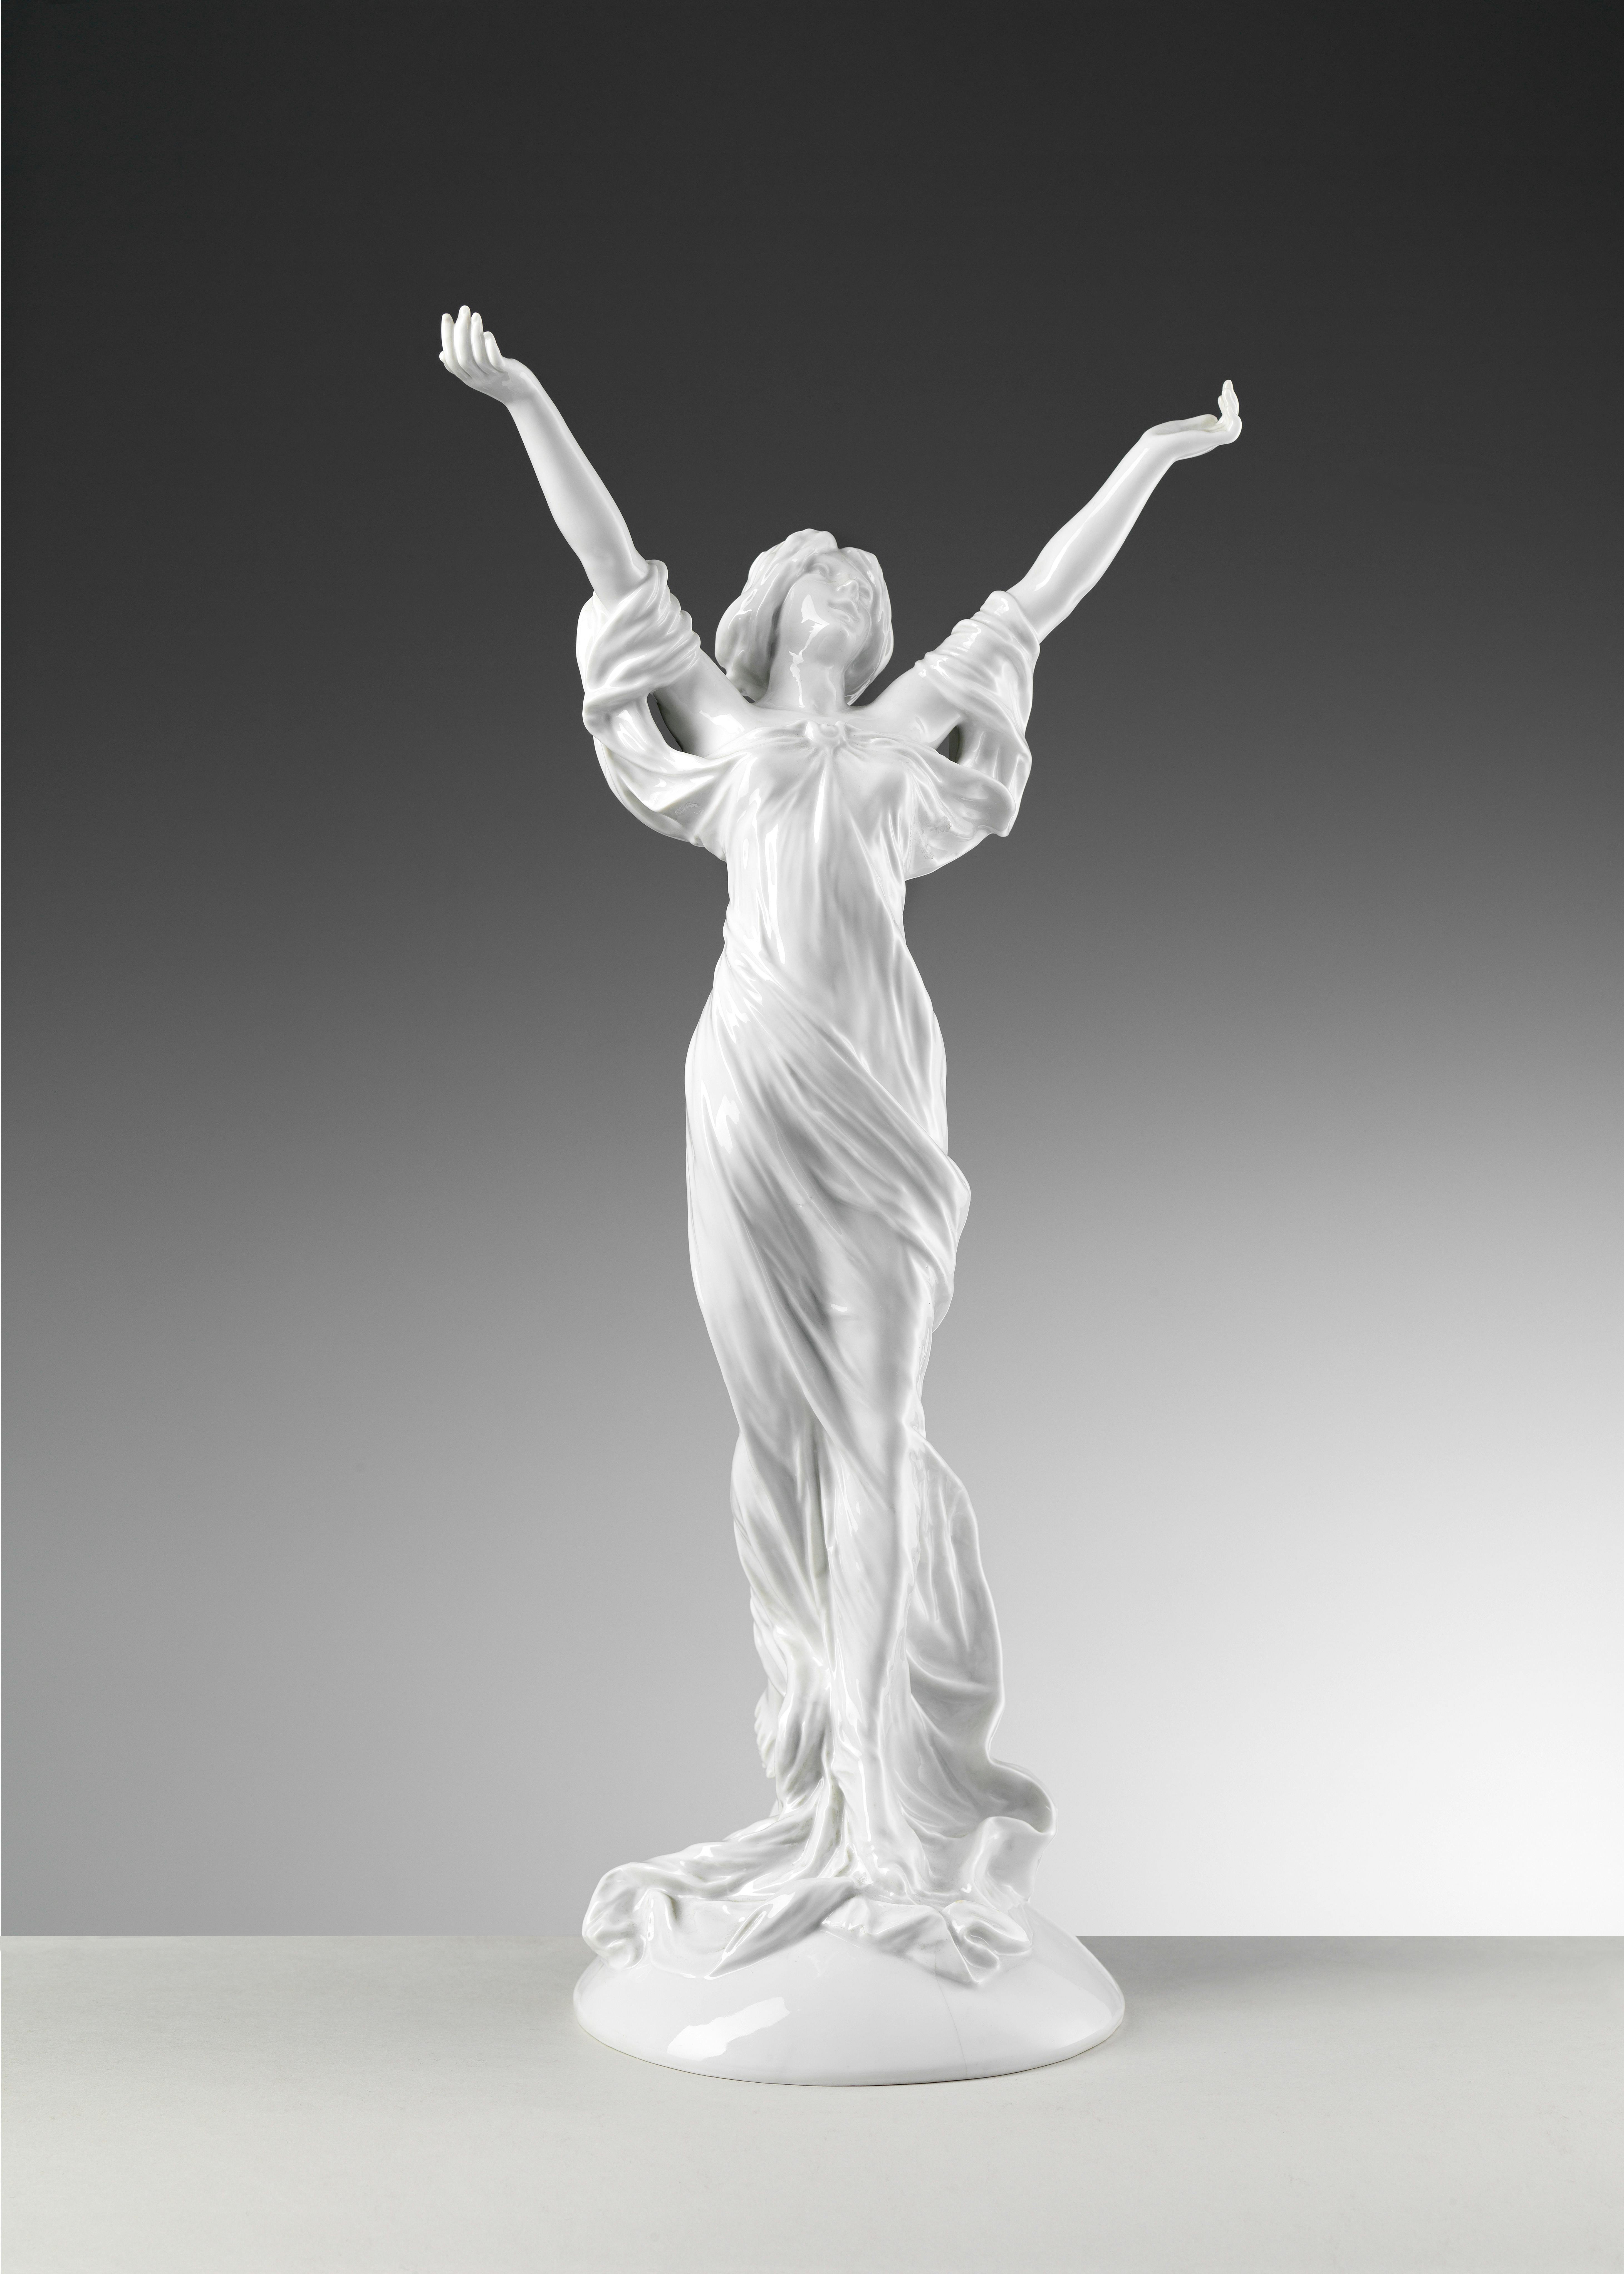 La scultura raffigura una donna a braccia aperte con una veste leggera mossa dal vento